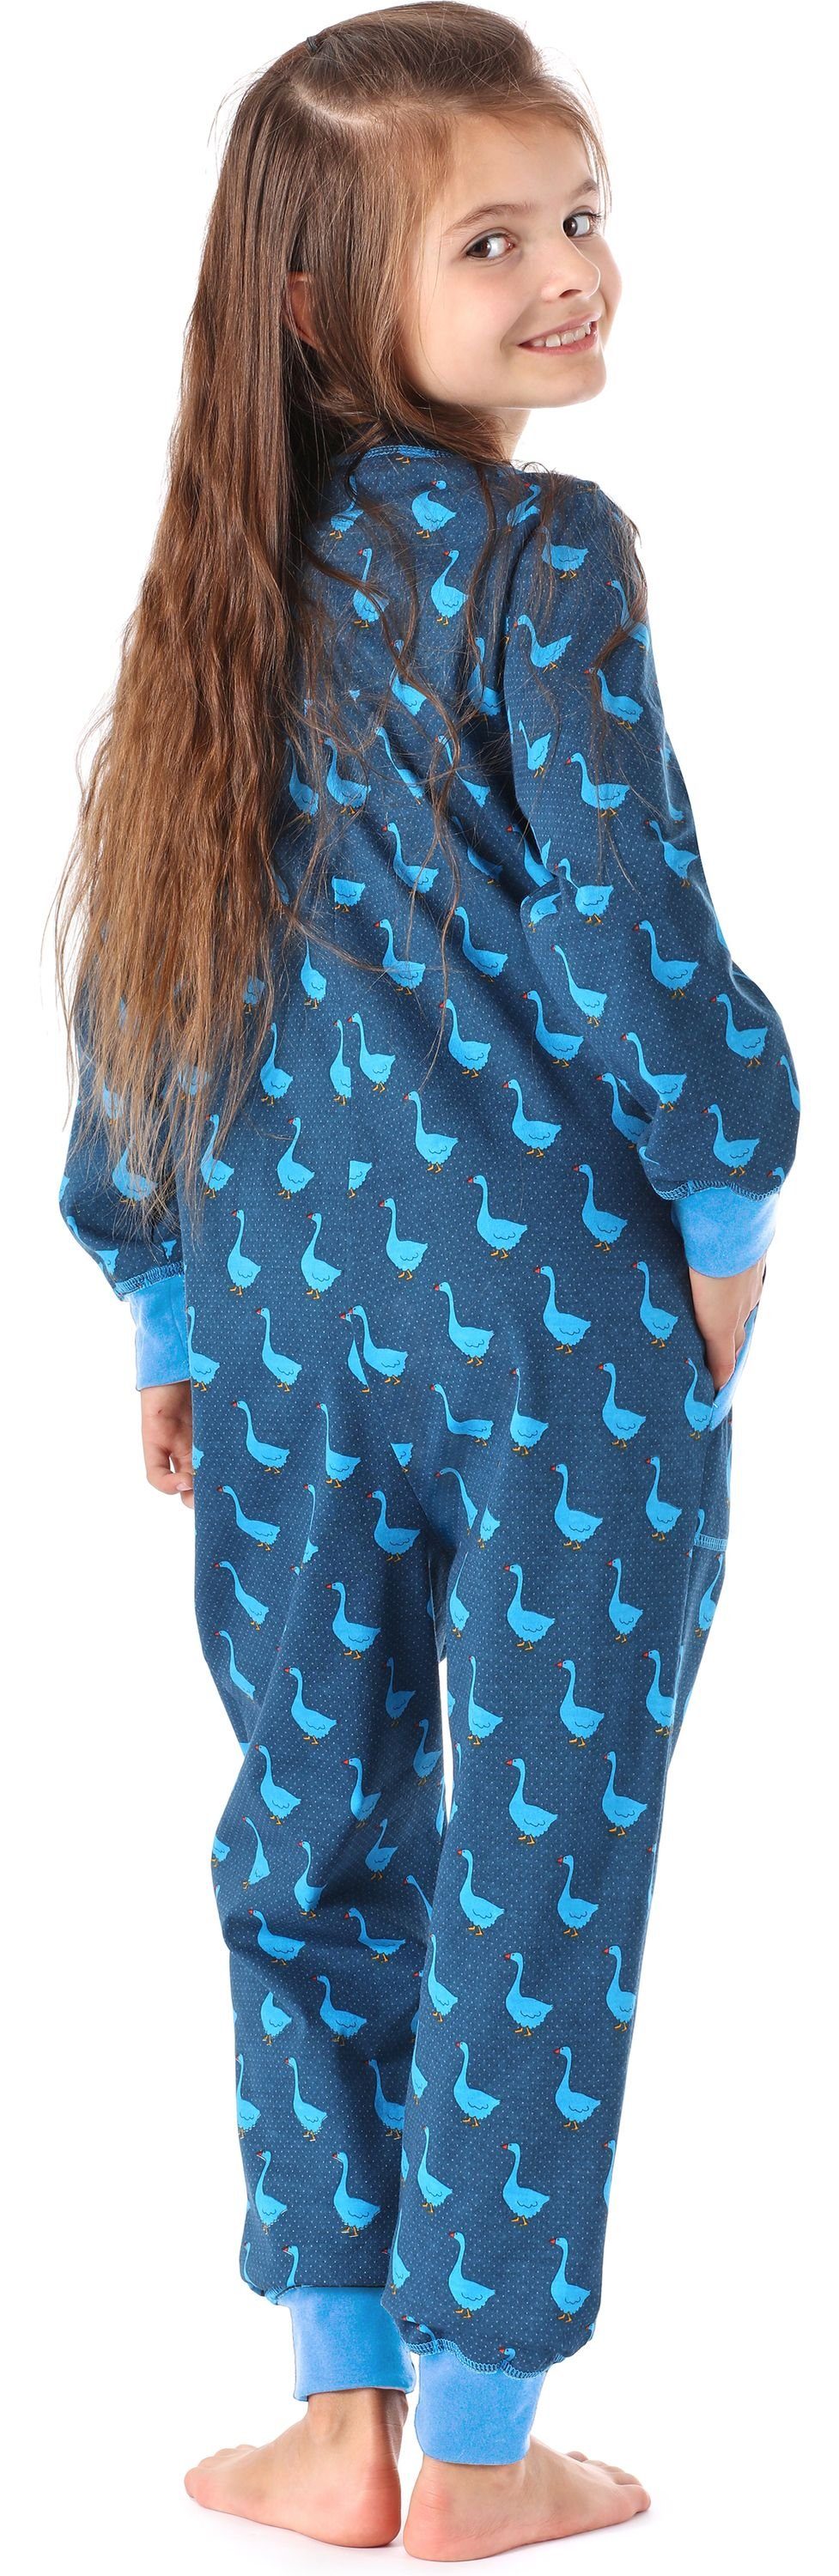 Merry Style Schlafanzug Mädchen Schlafanzug Blau Gans MS10-186 Jumpsuit